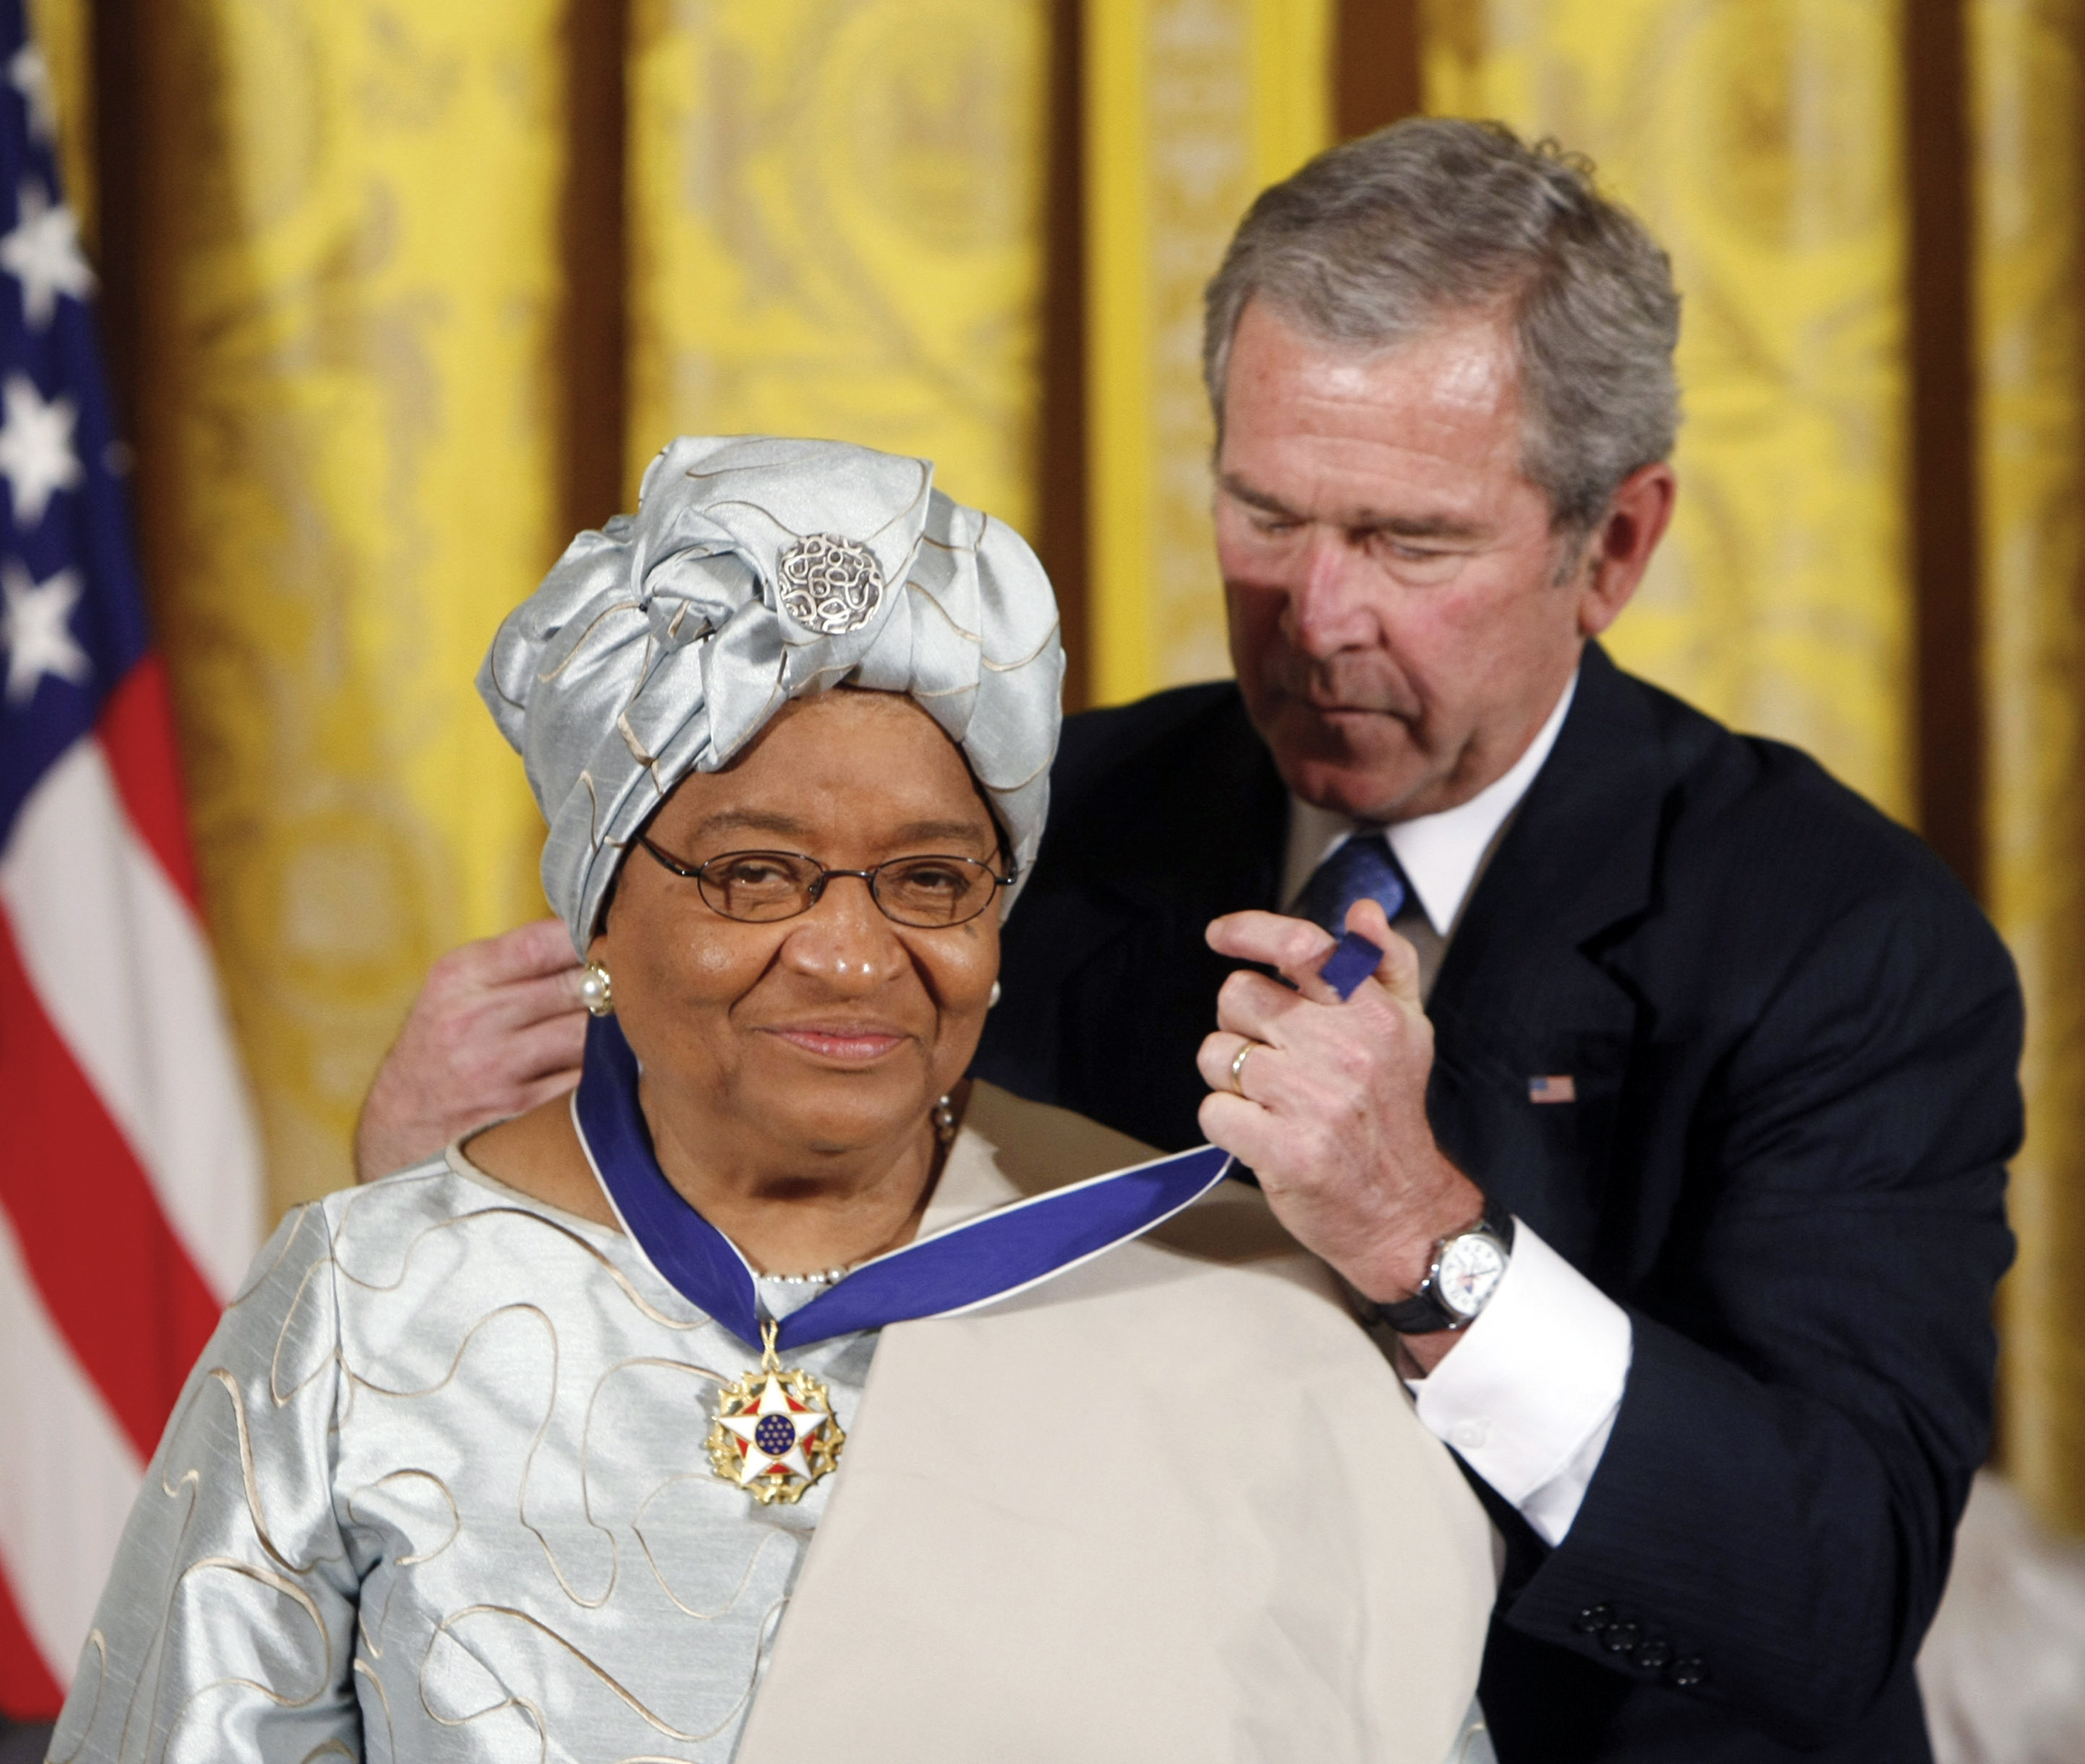 U.Le président George W. Bush remet la Médaille présidentielle de la Liberté à la Présidente du Libéria, Ellen Johnson Sirleaf, lors d'une cérémonie à la Maison Blanche en 2005. (AP Images / Gerald Herbert)